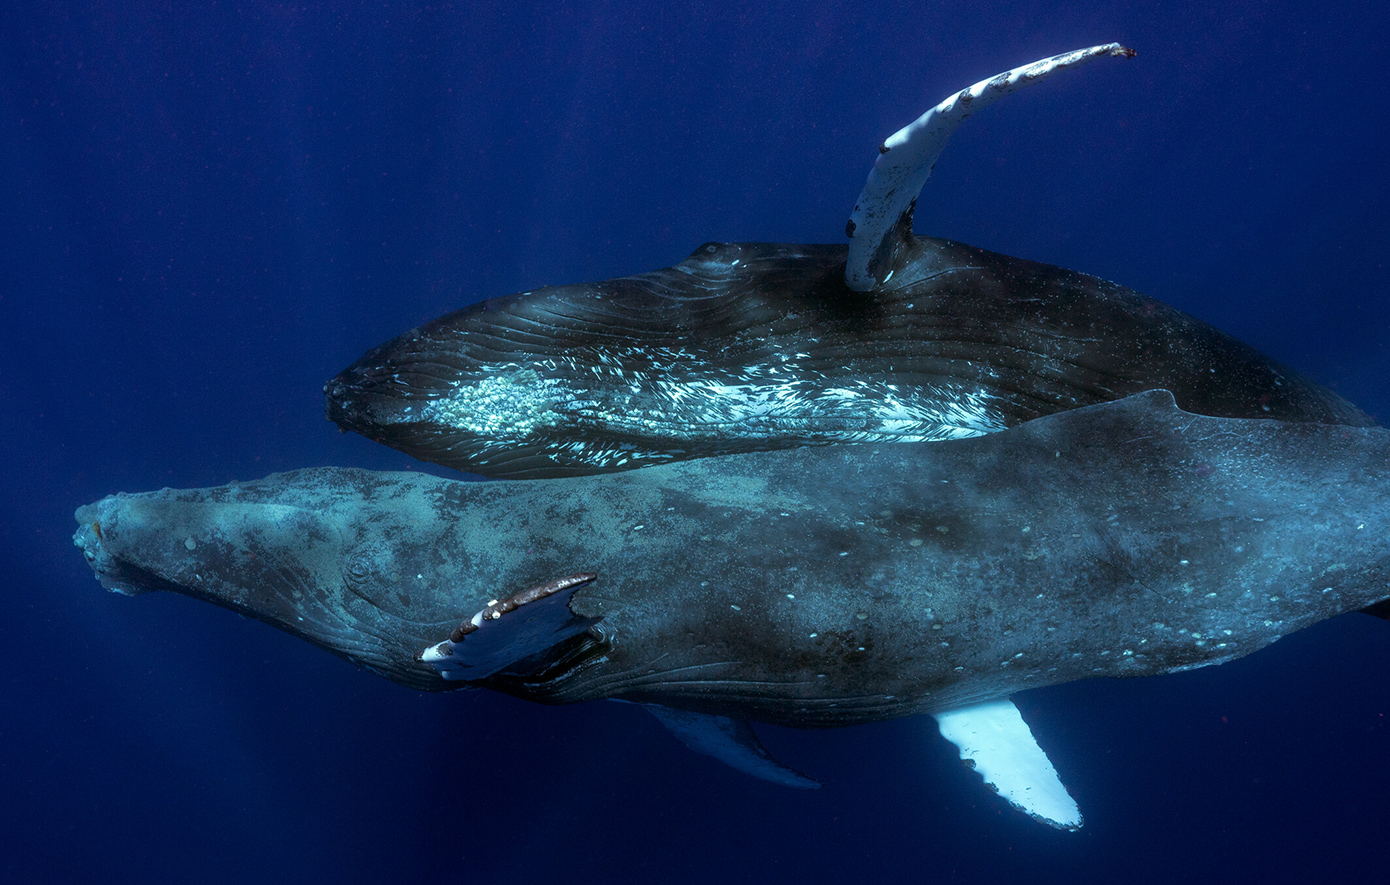 Σπάνιο φαινόμενο καταγράφηκε από φωτογράφους &#8211; Δύο αρσενικές μεγάπτερες φάλαινες έκαναν σεξ